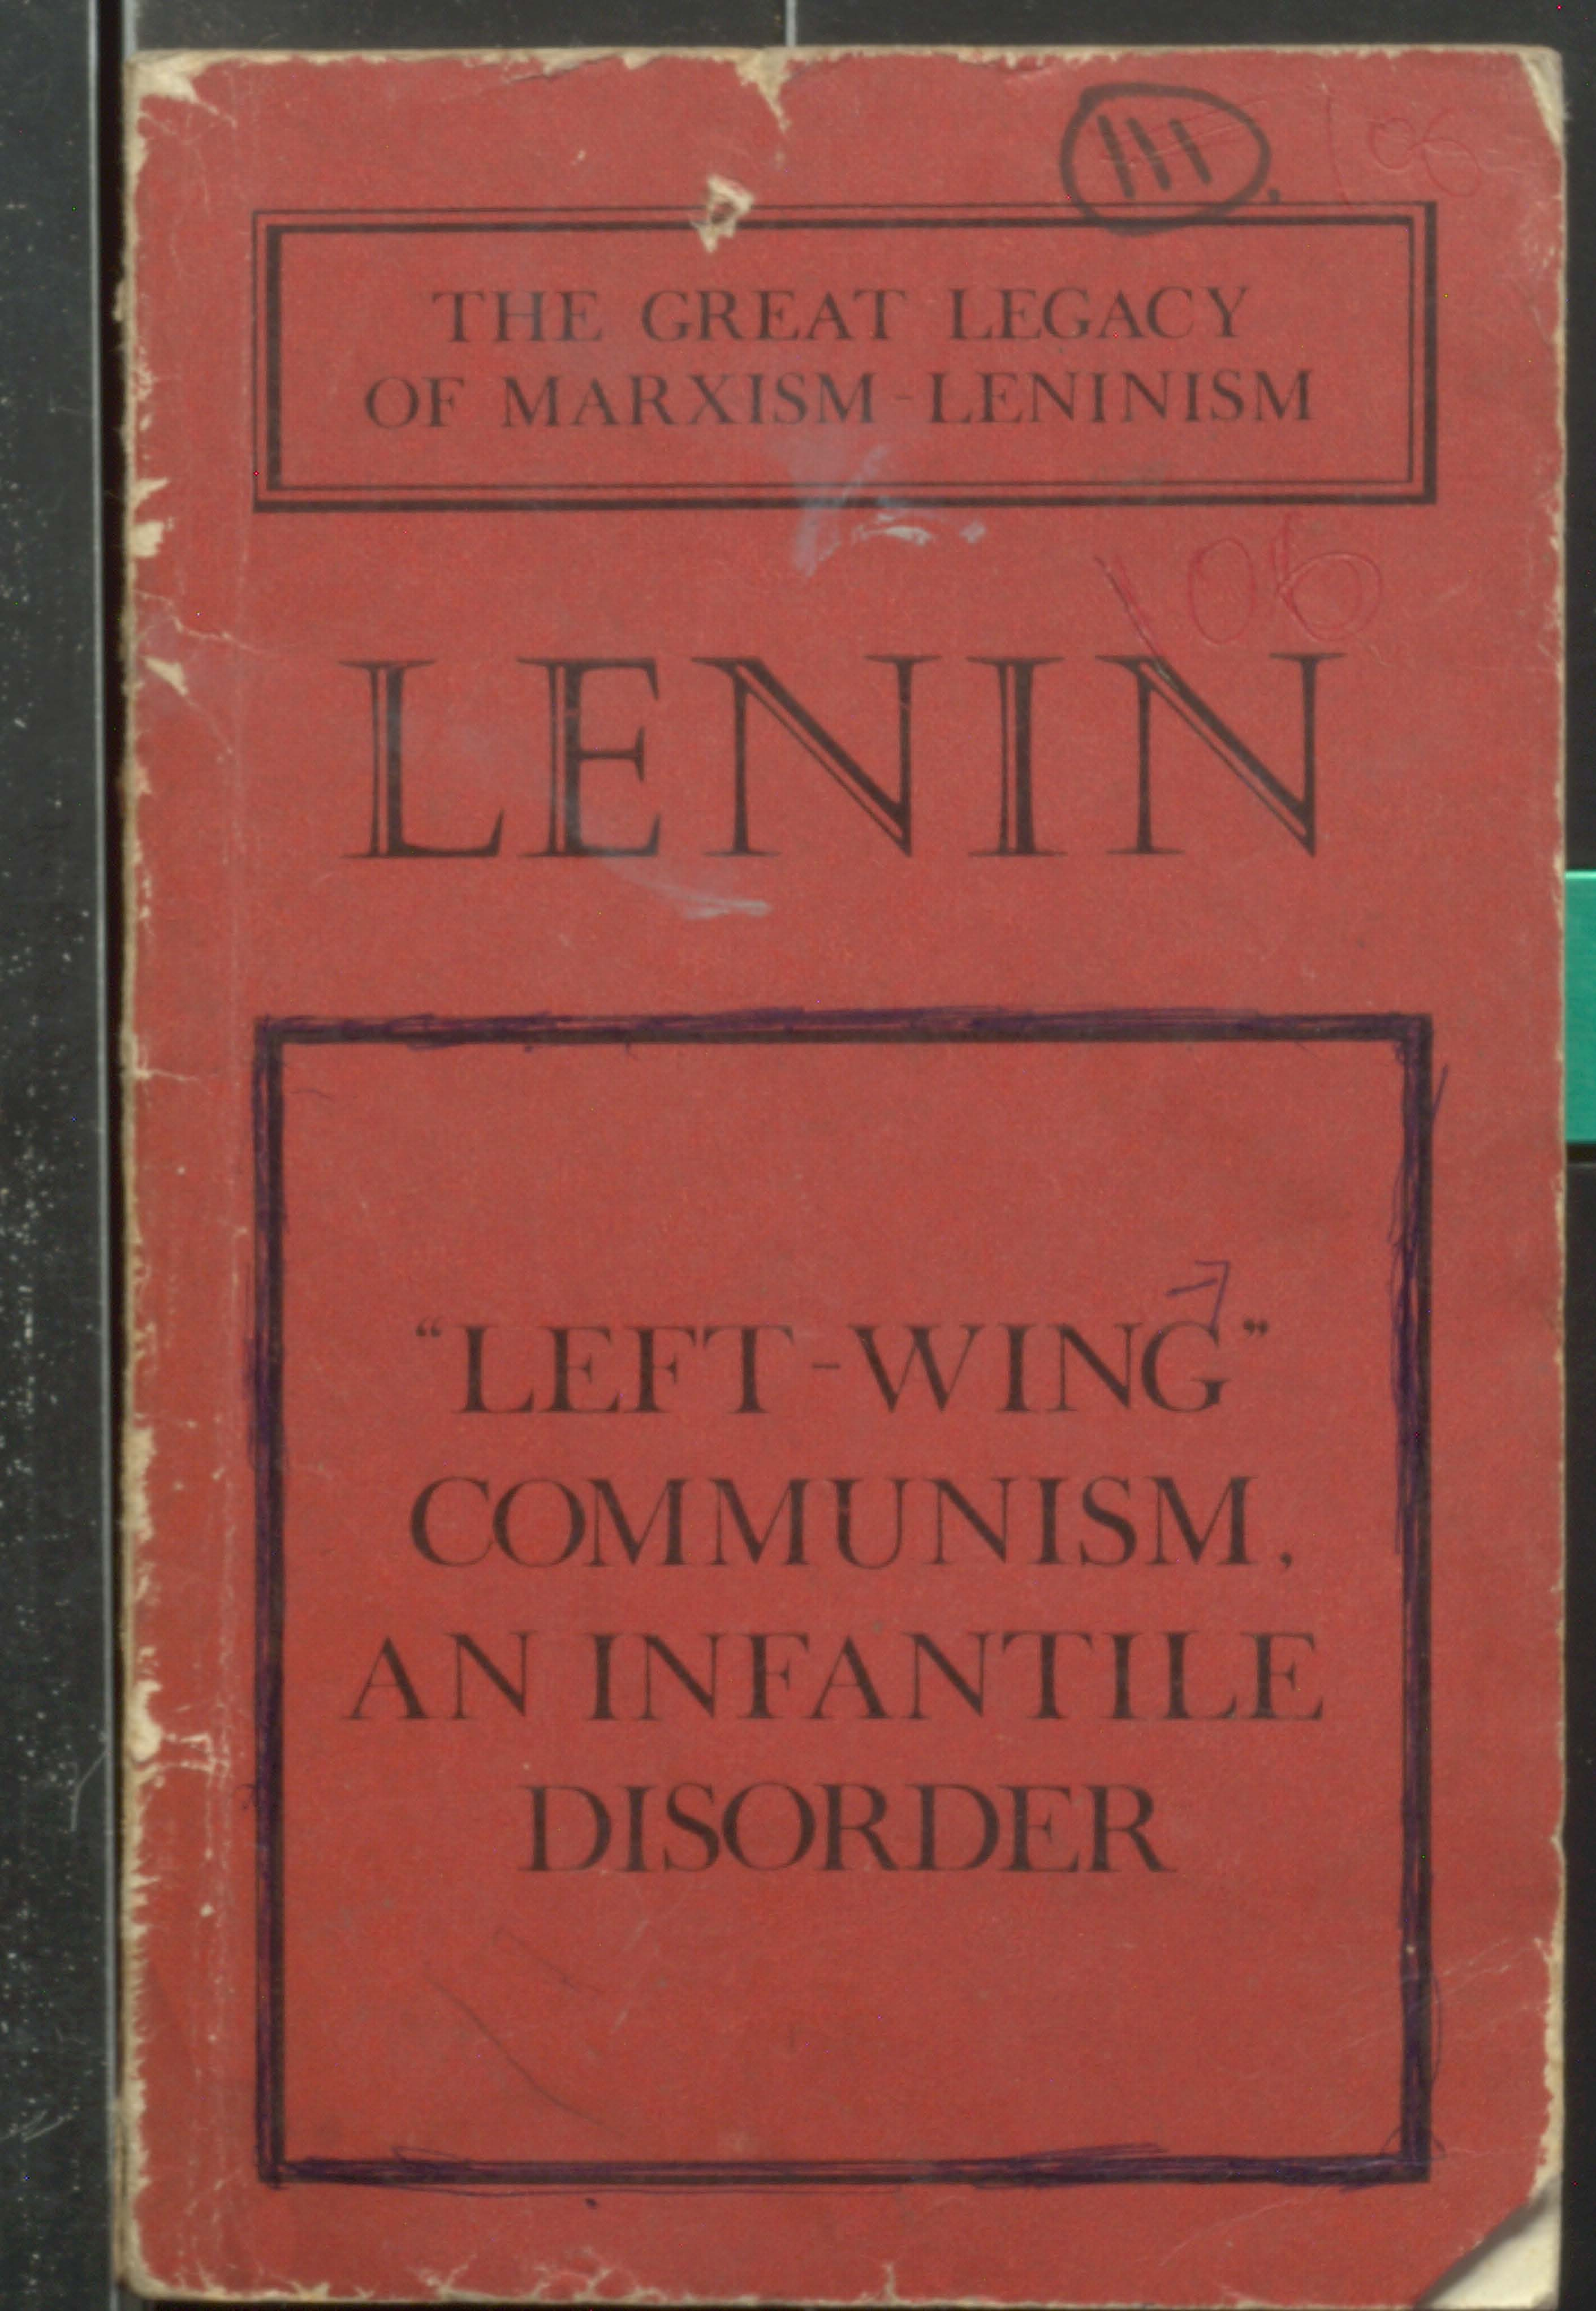 LENIN "LEFT-WING" communism, on infantile disorder.